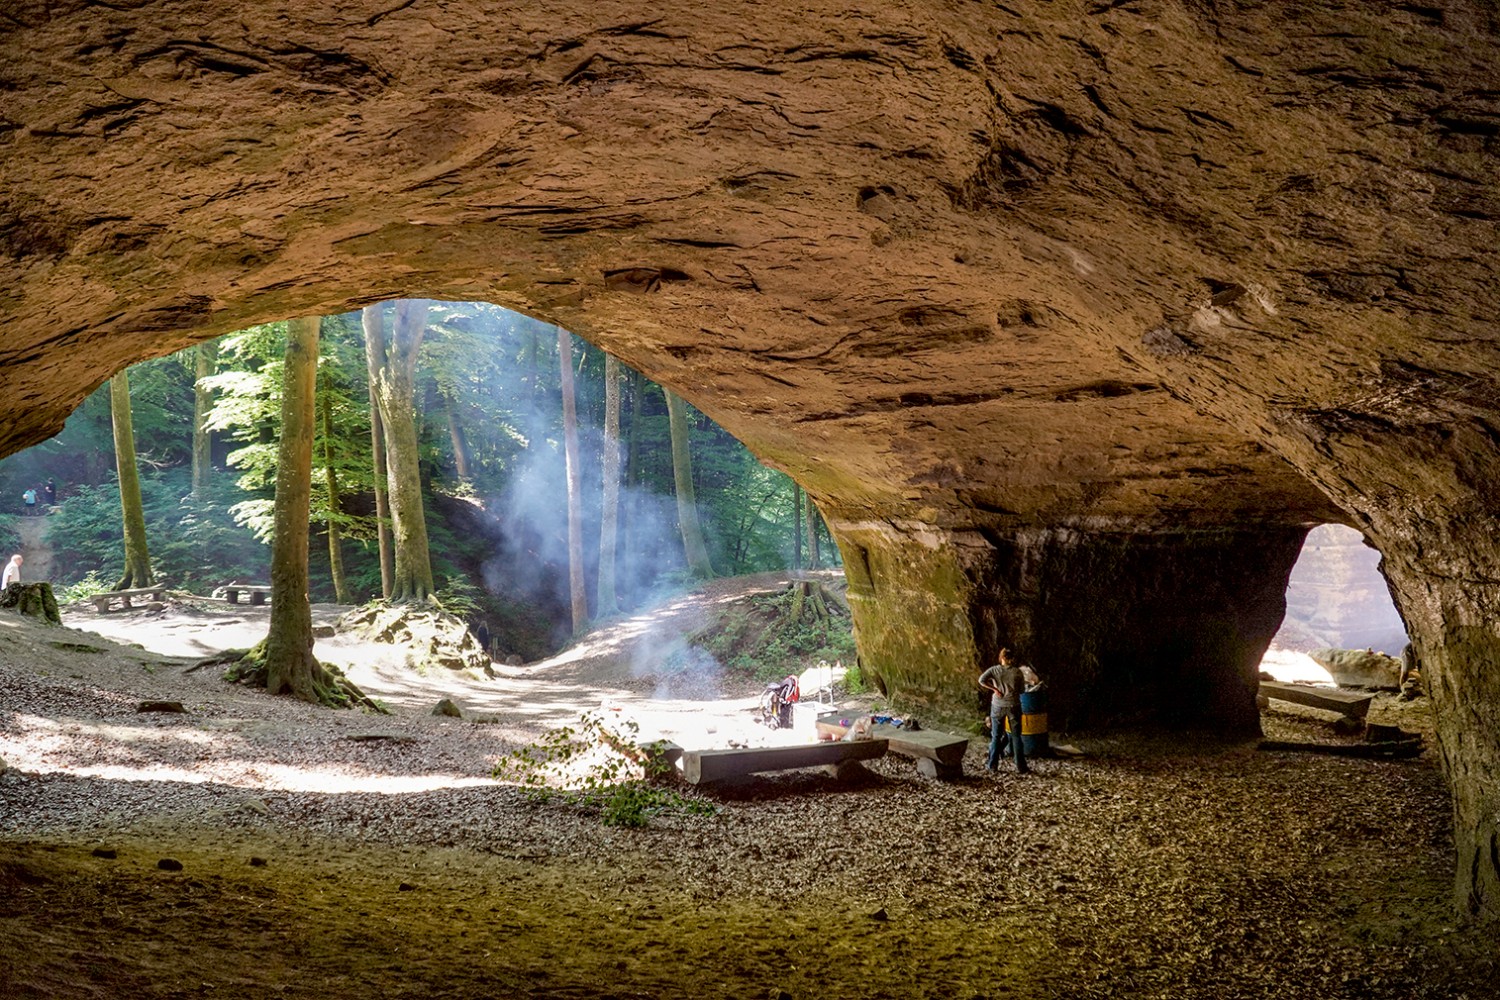 Le grotte di arenaria nel bosco di Liebegg invitano grandi e piccini a fare una grigliata.